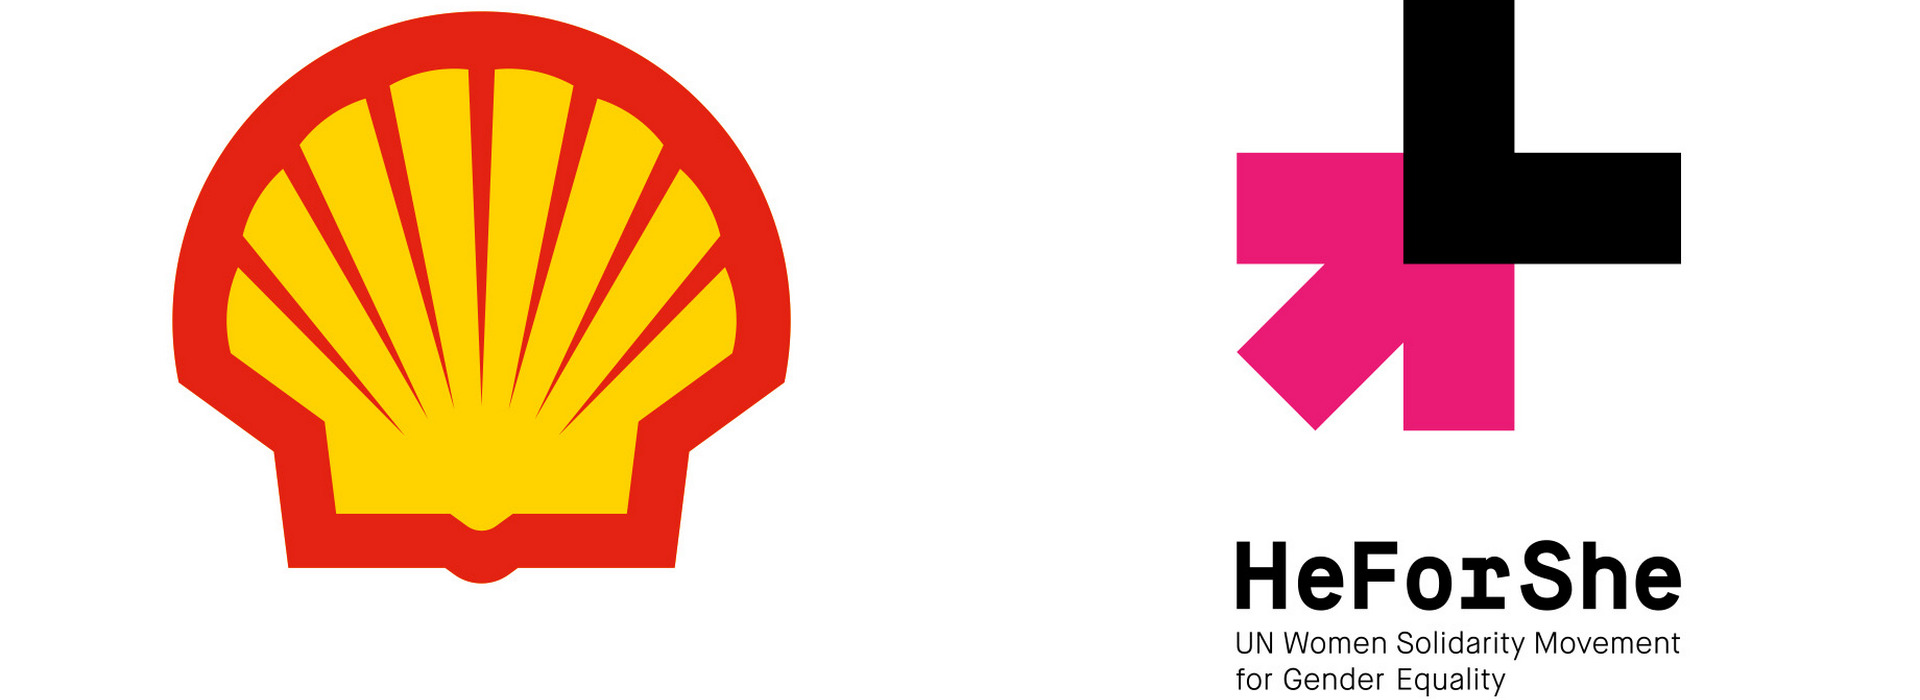 Shell Ukraine Joins the HeForShe Movement